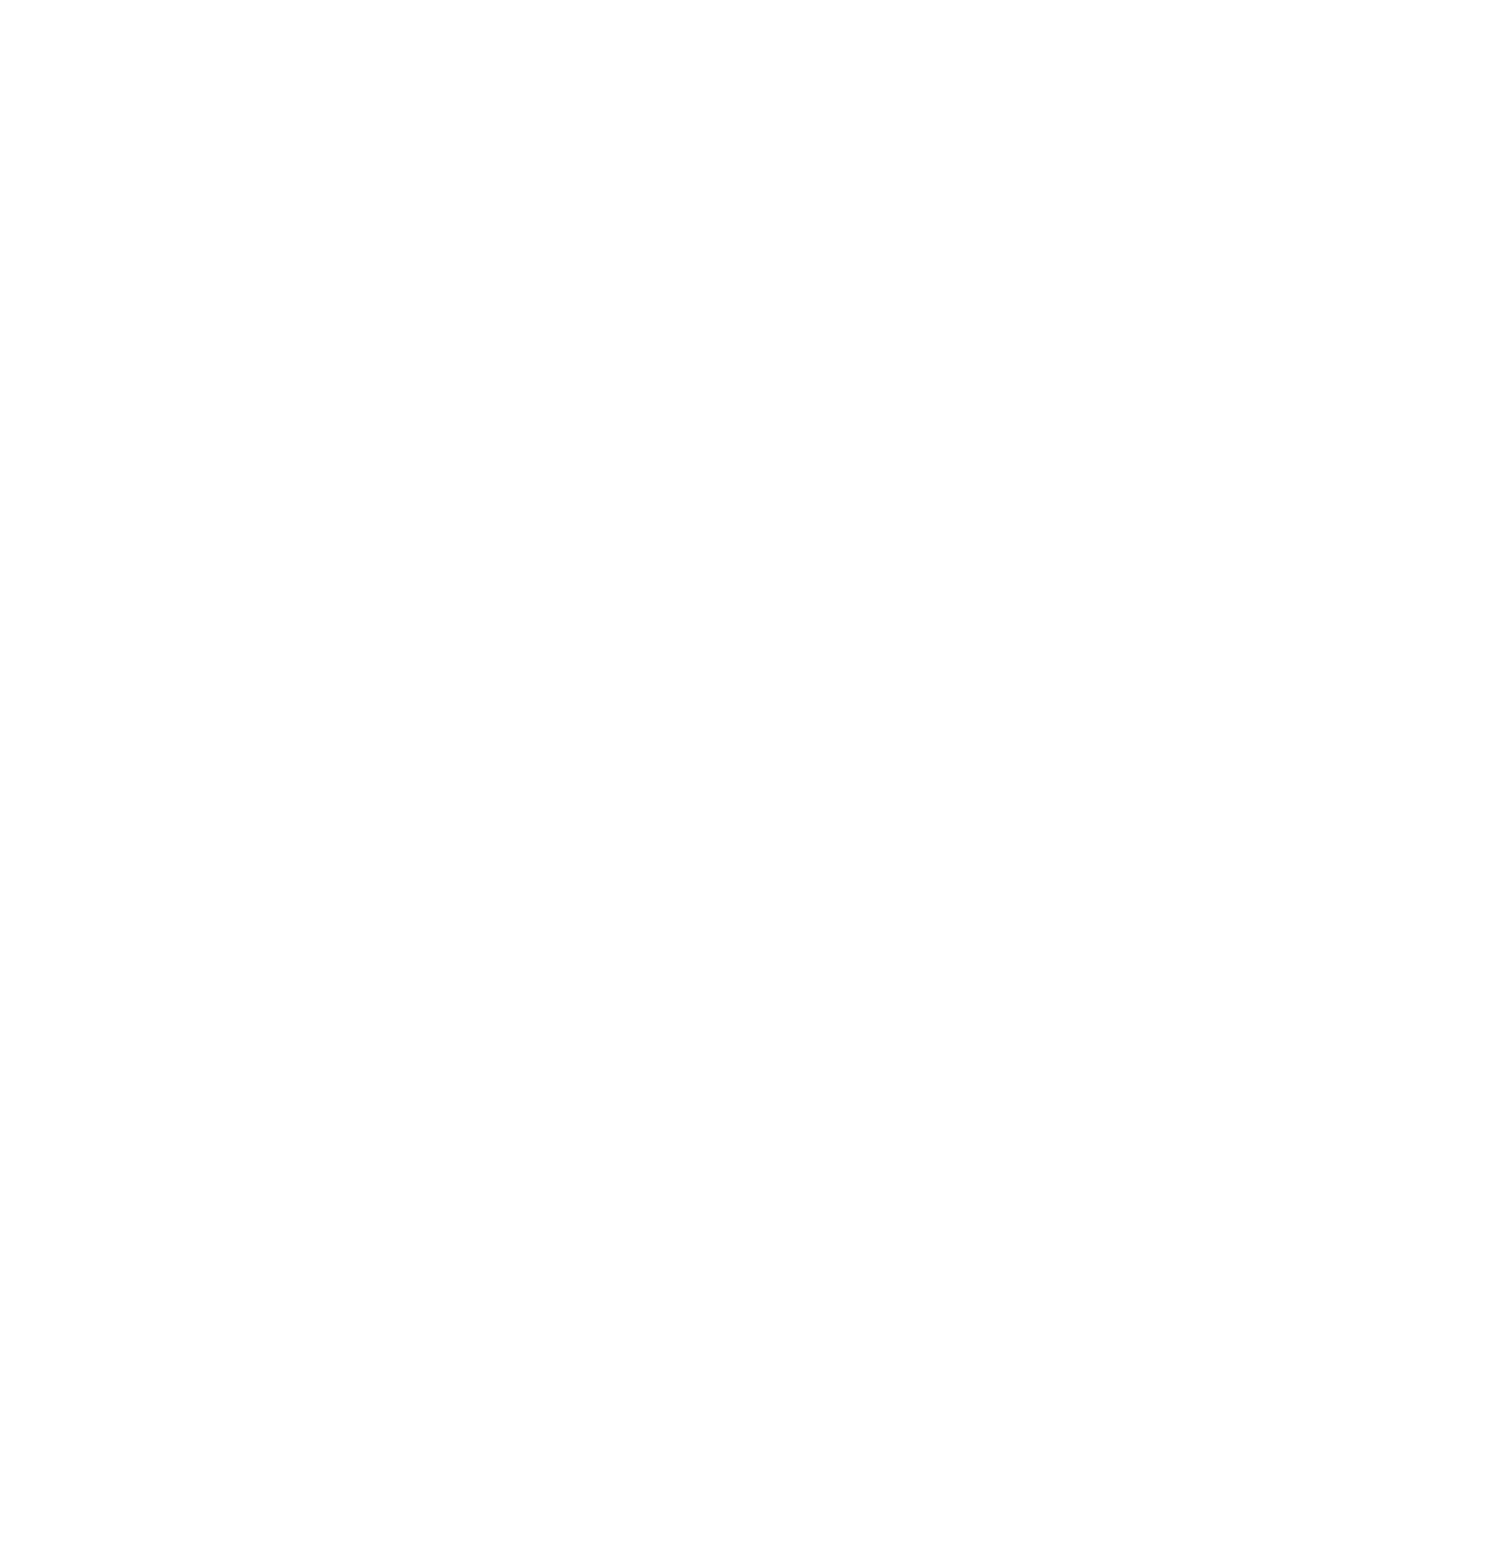 Julius Bär logo pour fonds sombres (PNG transparent)